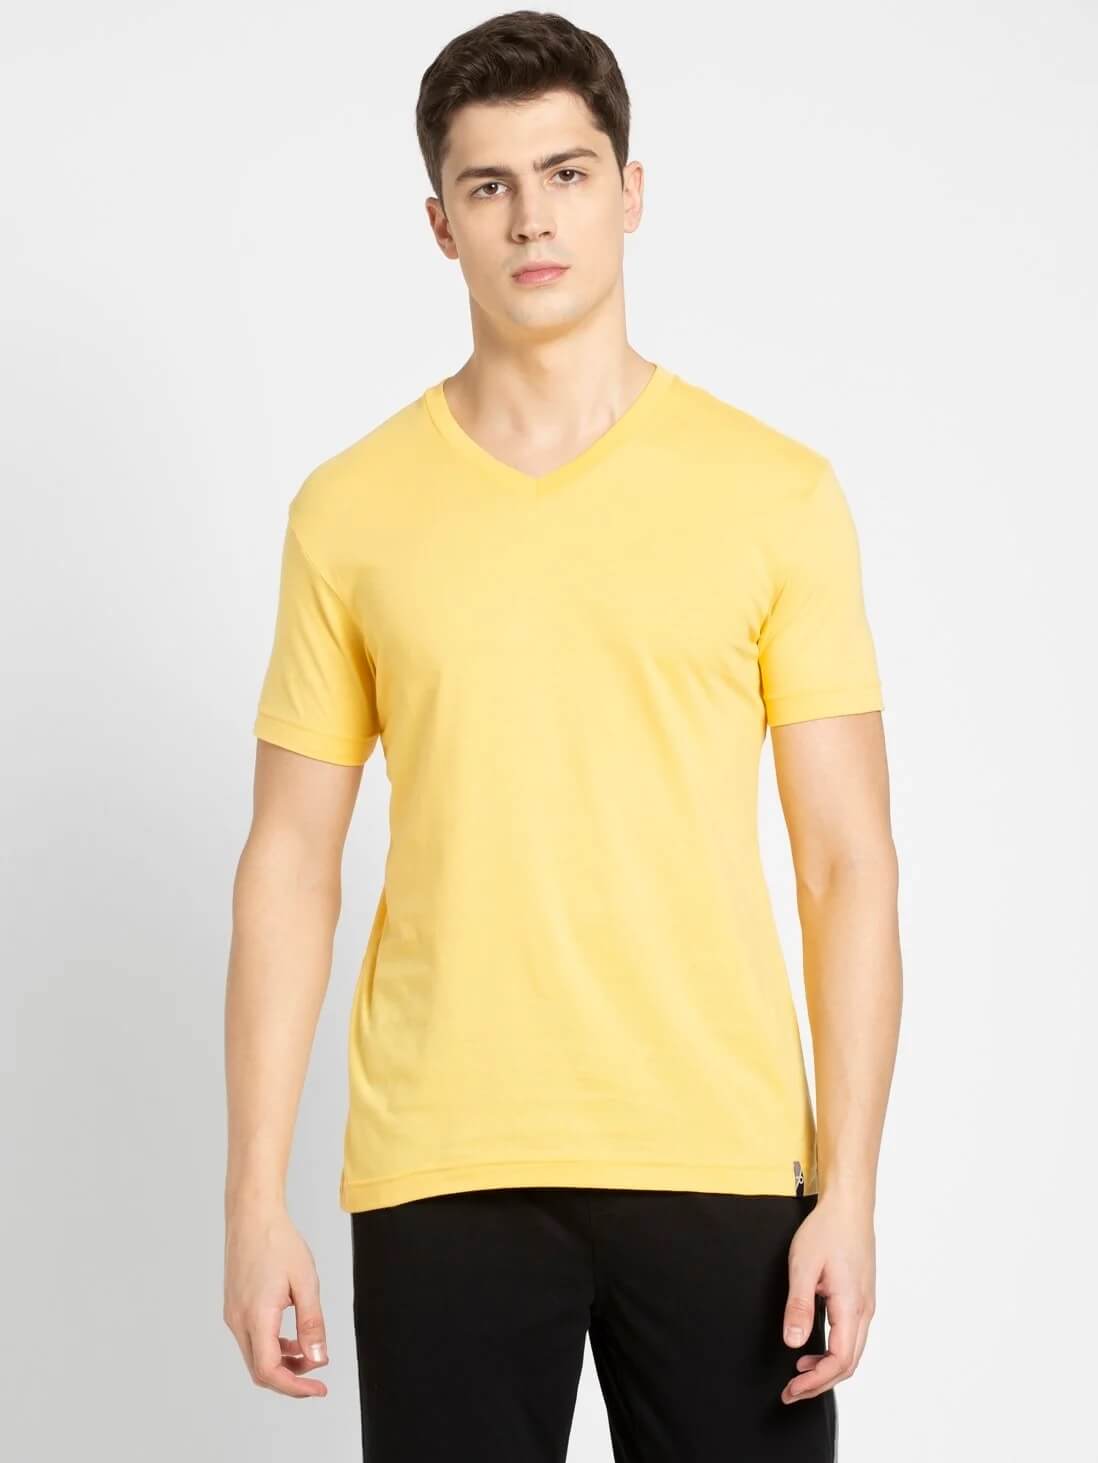 Jockey Yellow V-Neck T-Shirt for Men #2726